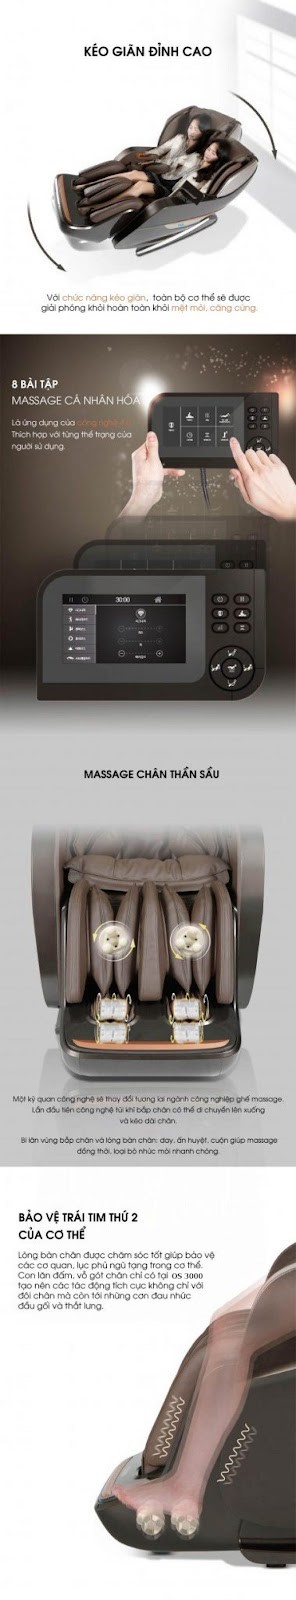 Công nghệ ghế massage OKINAWA OS 3000( BOWN)